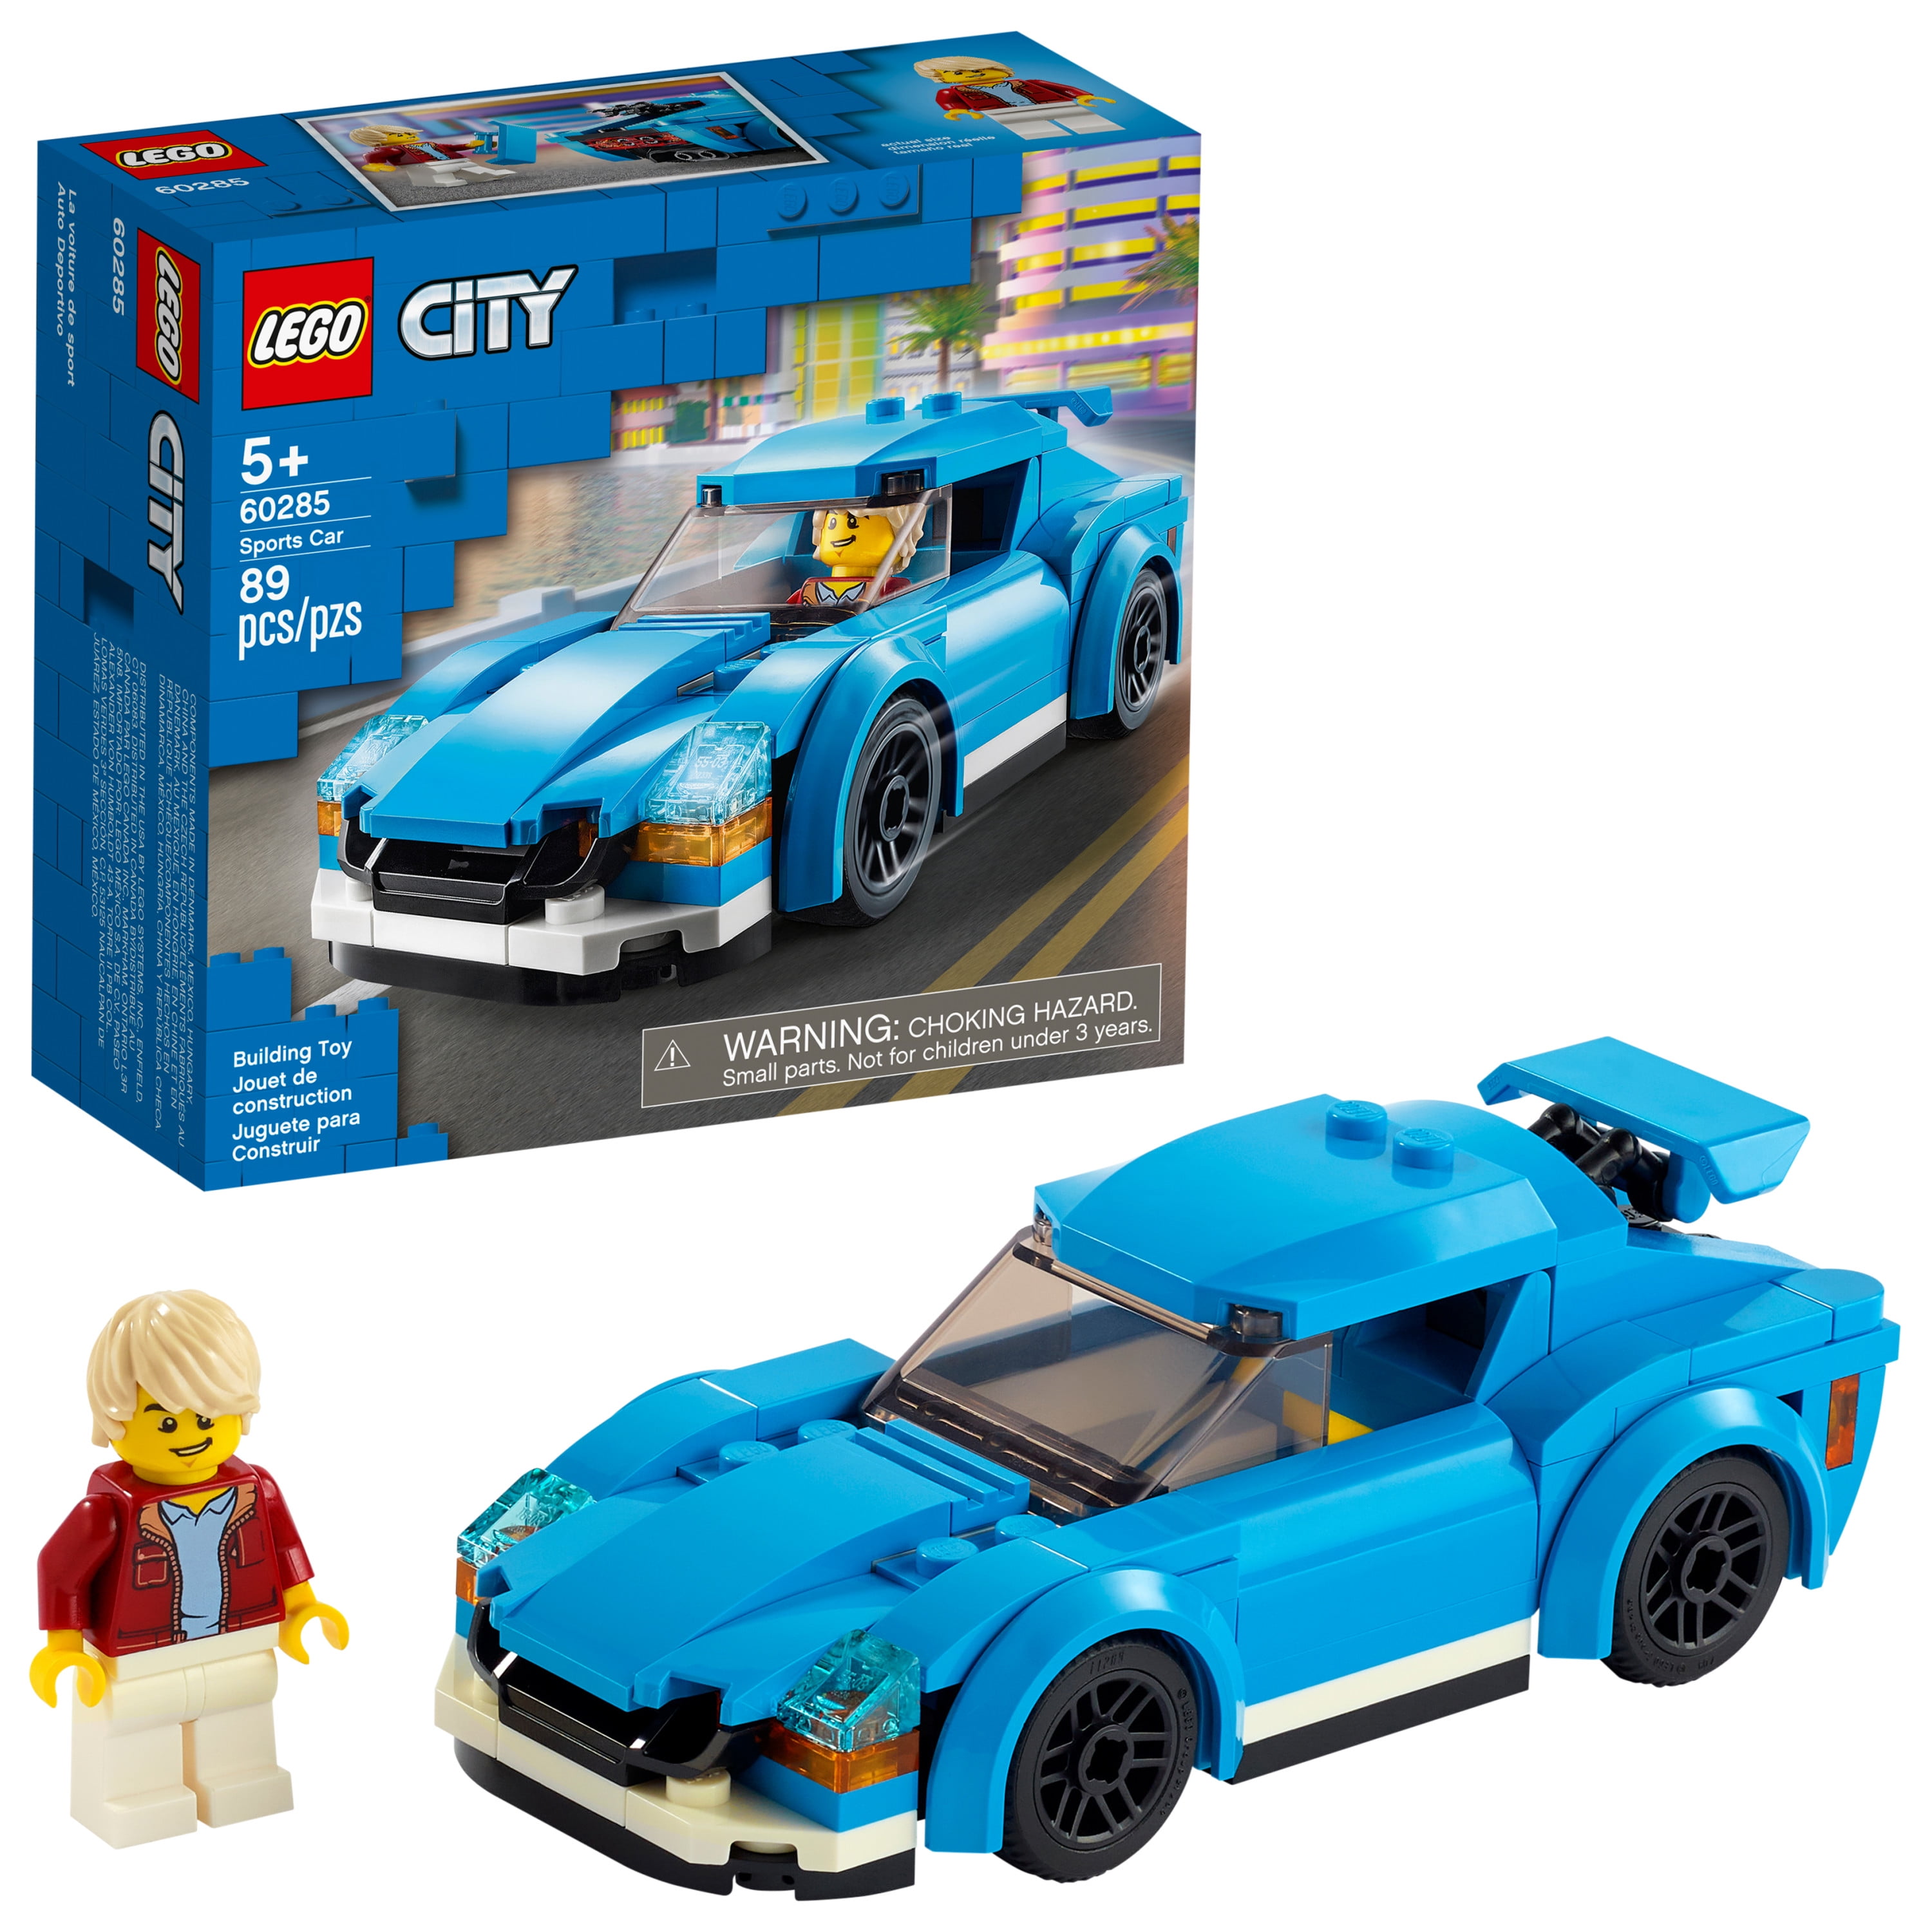 Lego city car - rbtaia